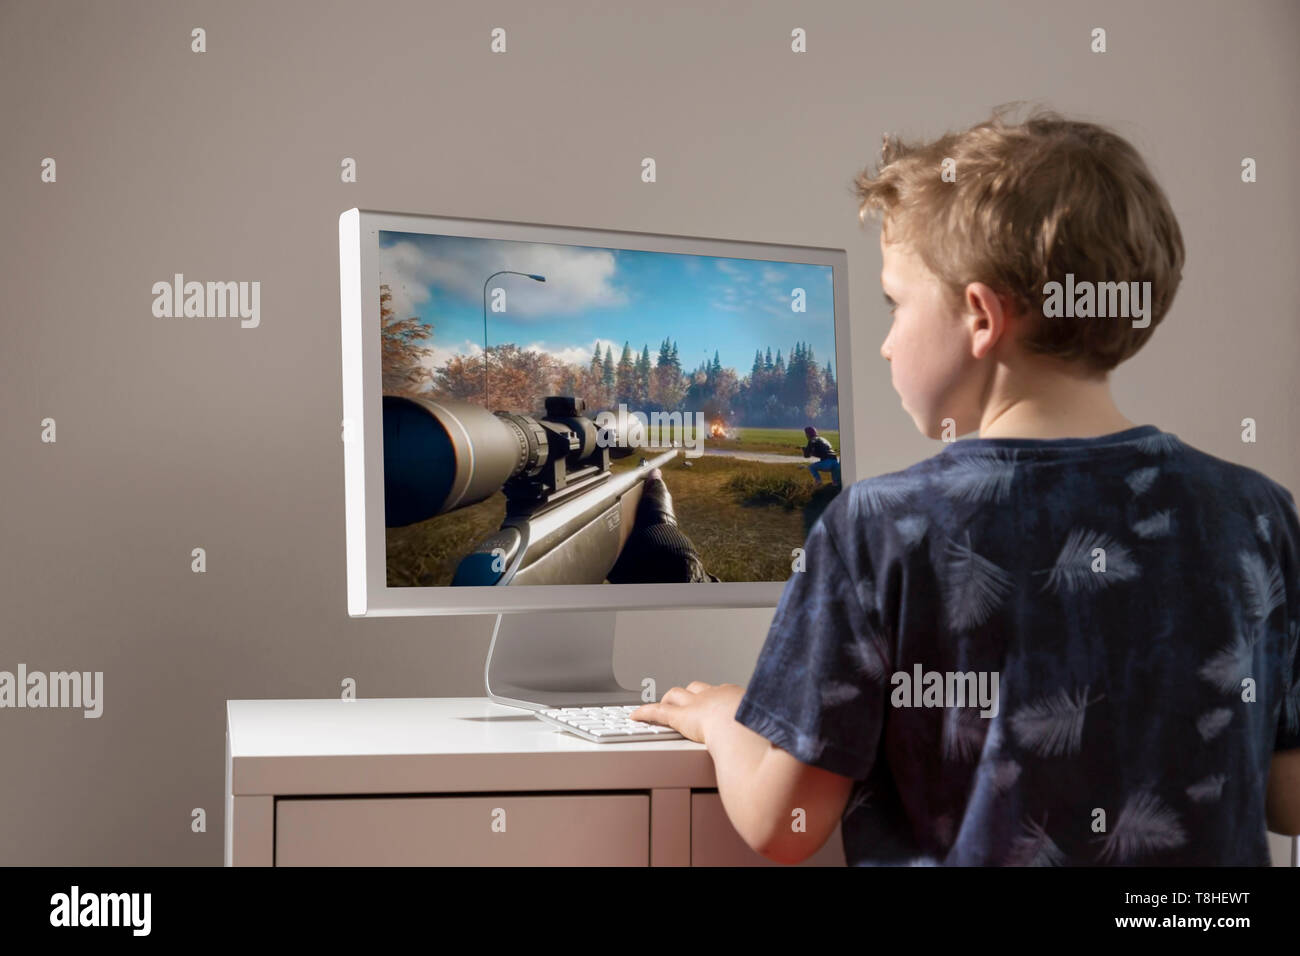 Junge, 8 Jahre, das Spielen eines Ego-shooter am Computer Stockfoto